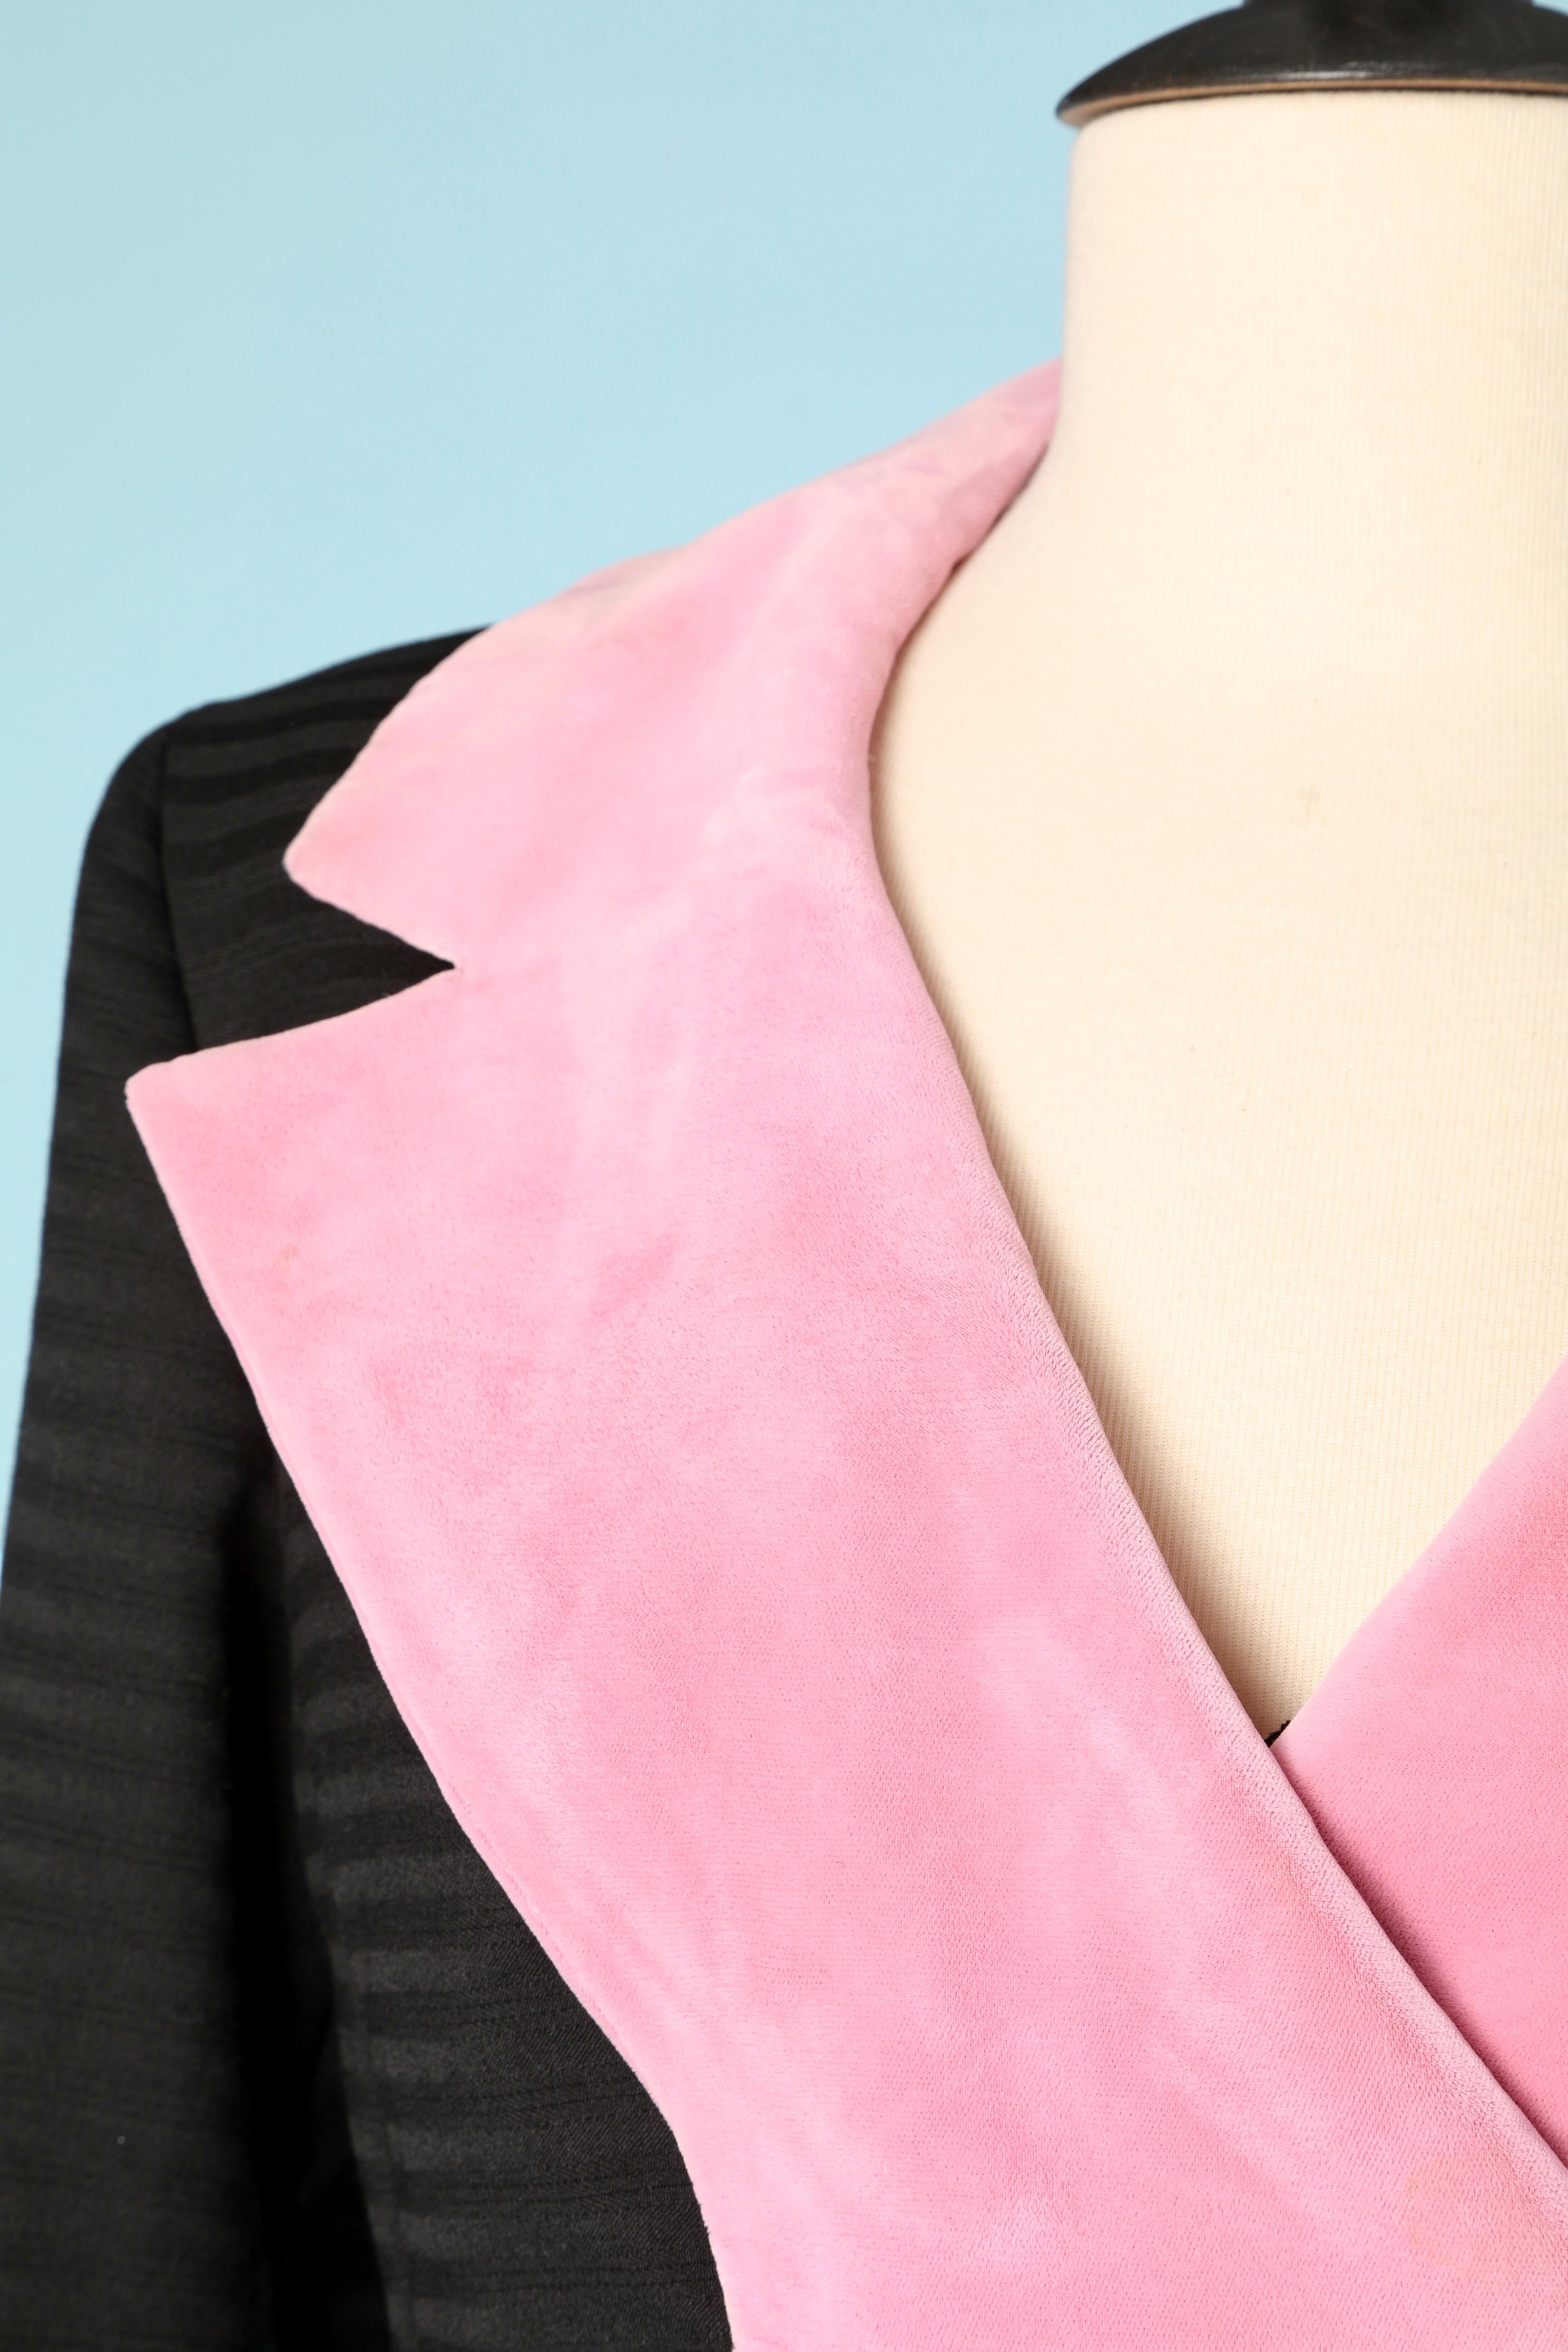 costume jupe 3 pièces en velours rose et soie noire.( haut, jupe et veste) boutons Passementerie
TAILLE : 38 (Fr) 8 (Us )